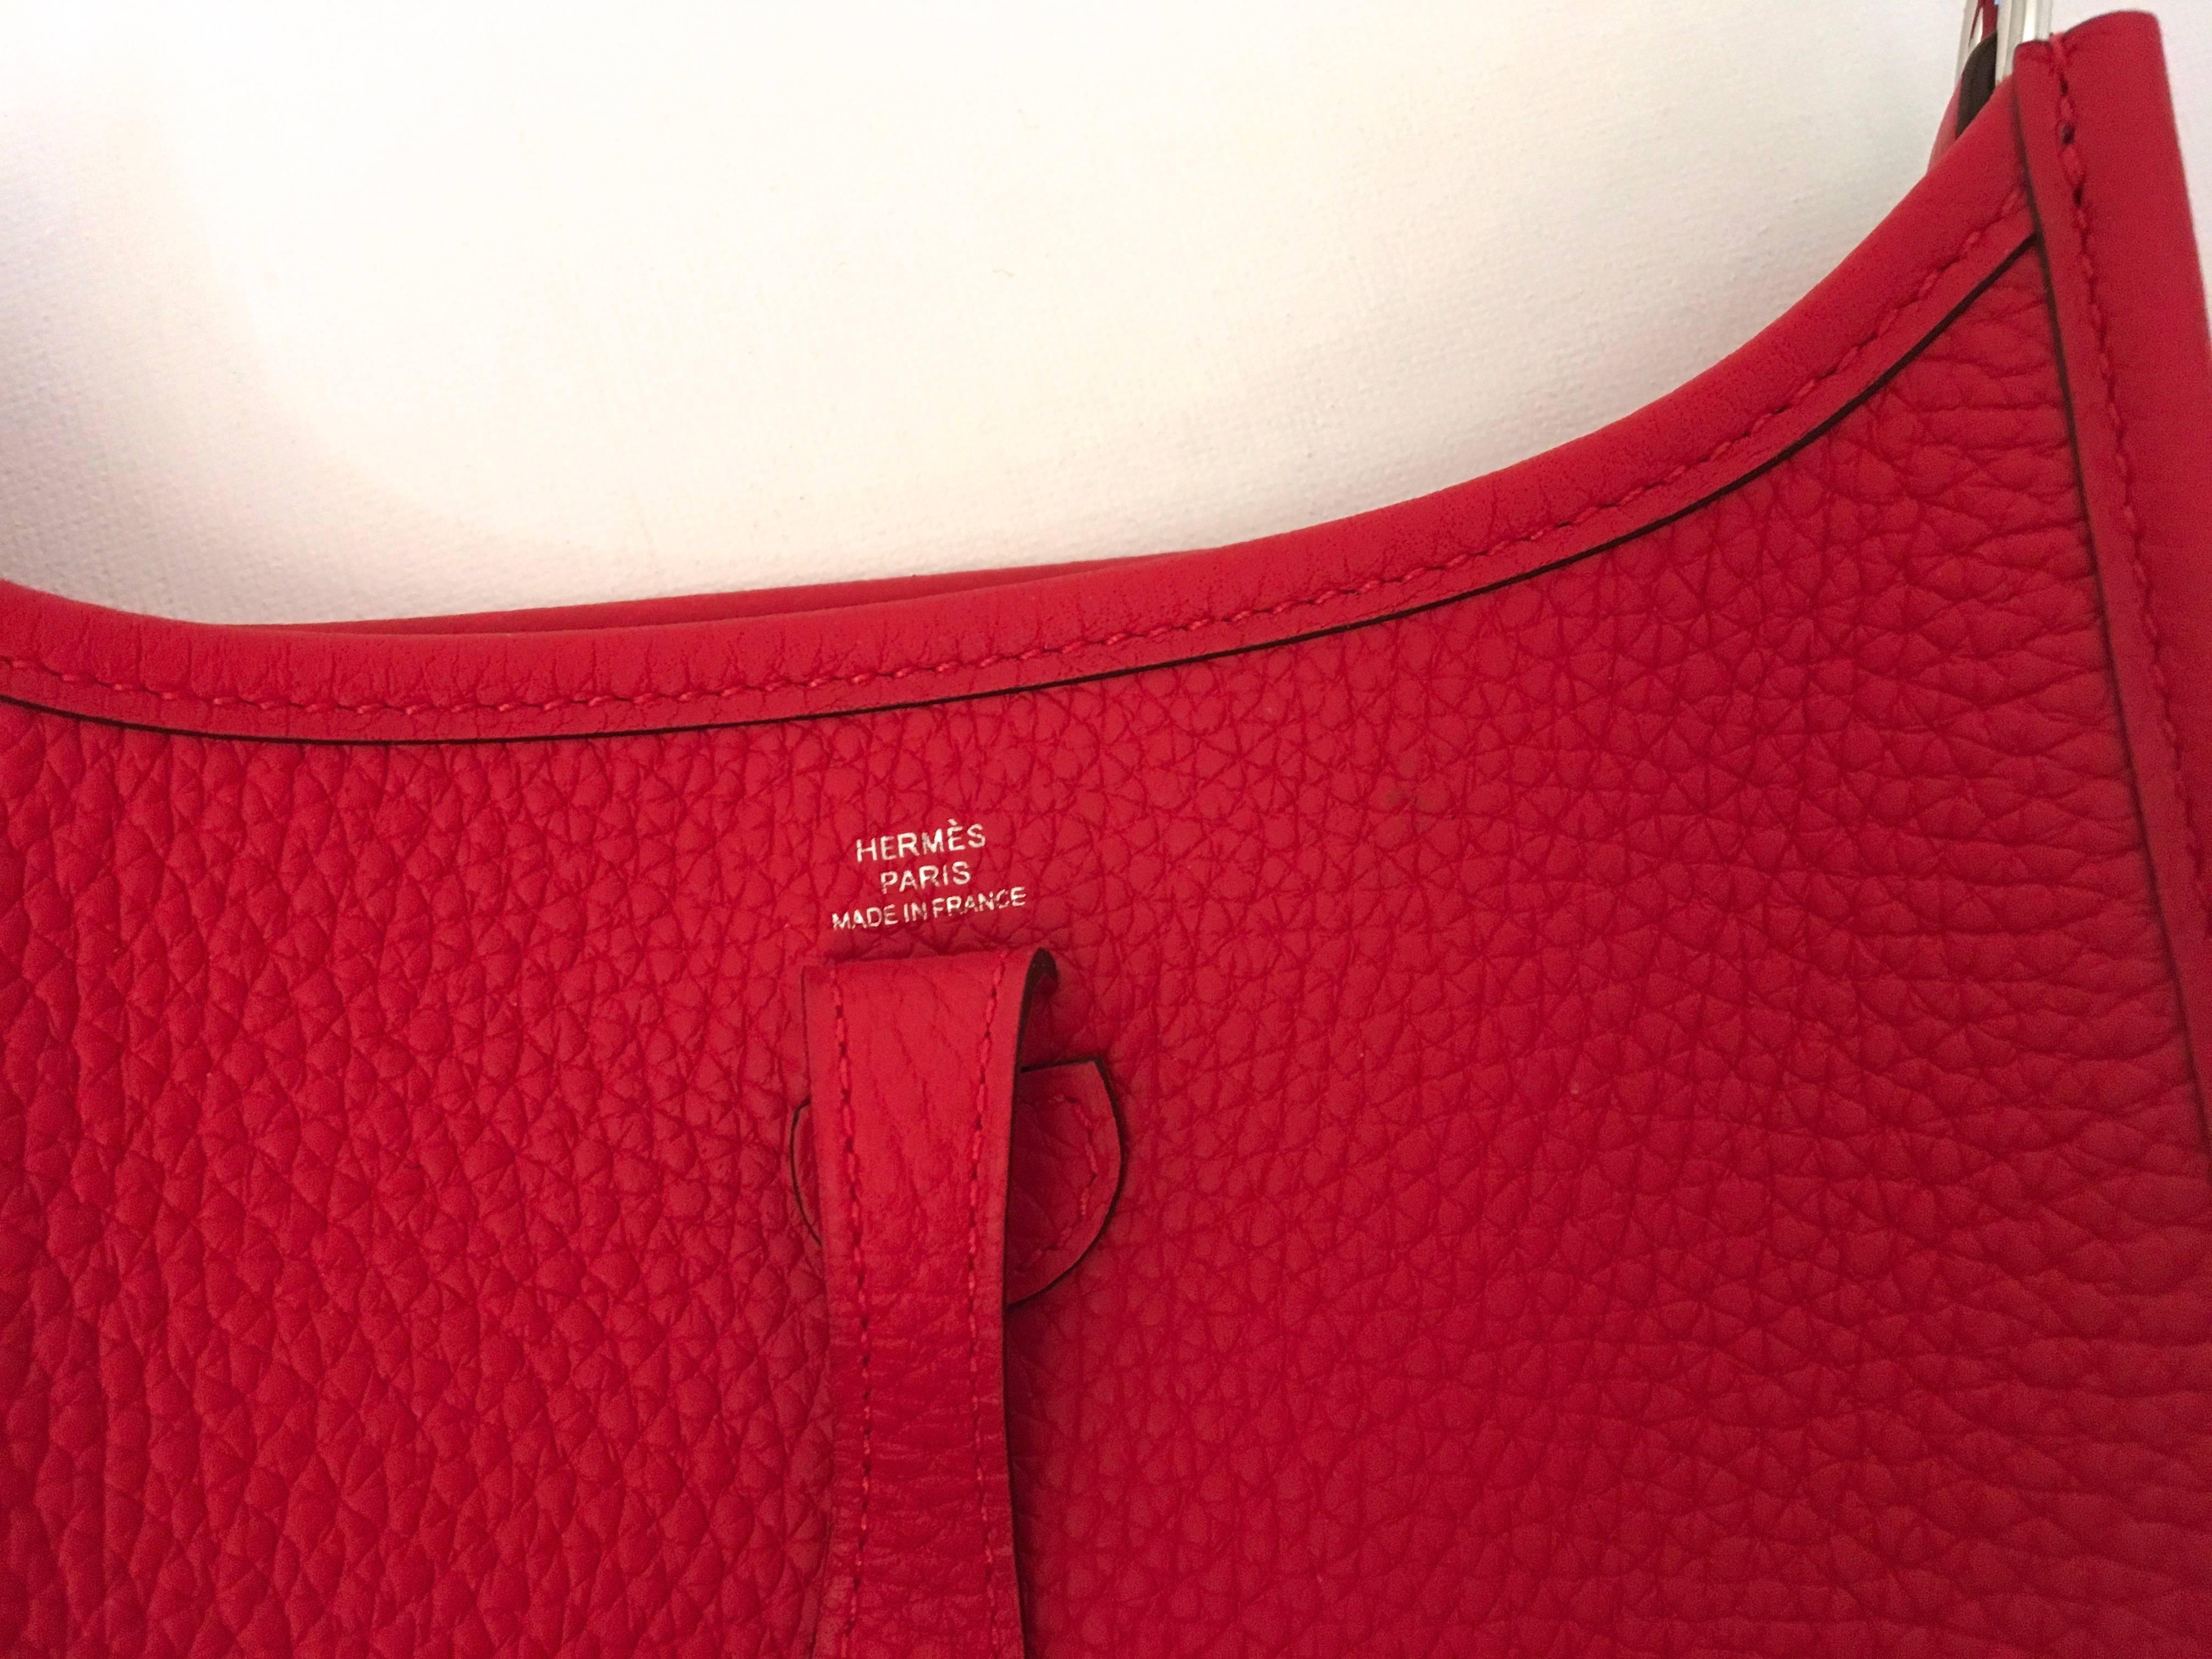 New HERMES Mini Evelyne Red Tomato Crossbody Bag - Clemence Leather 2